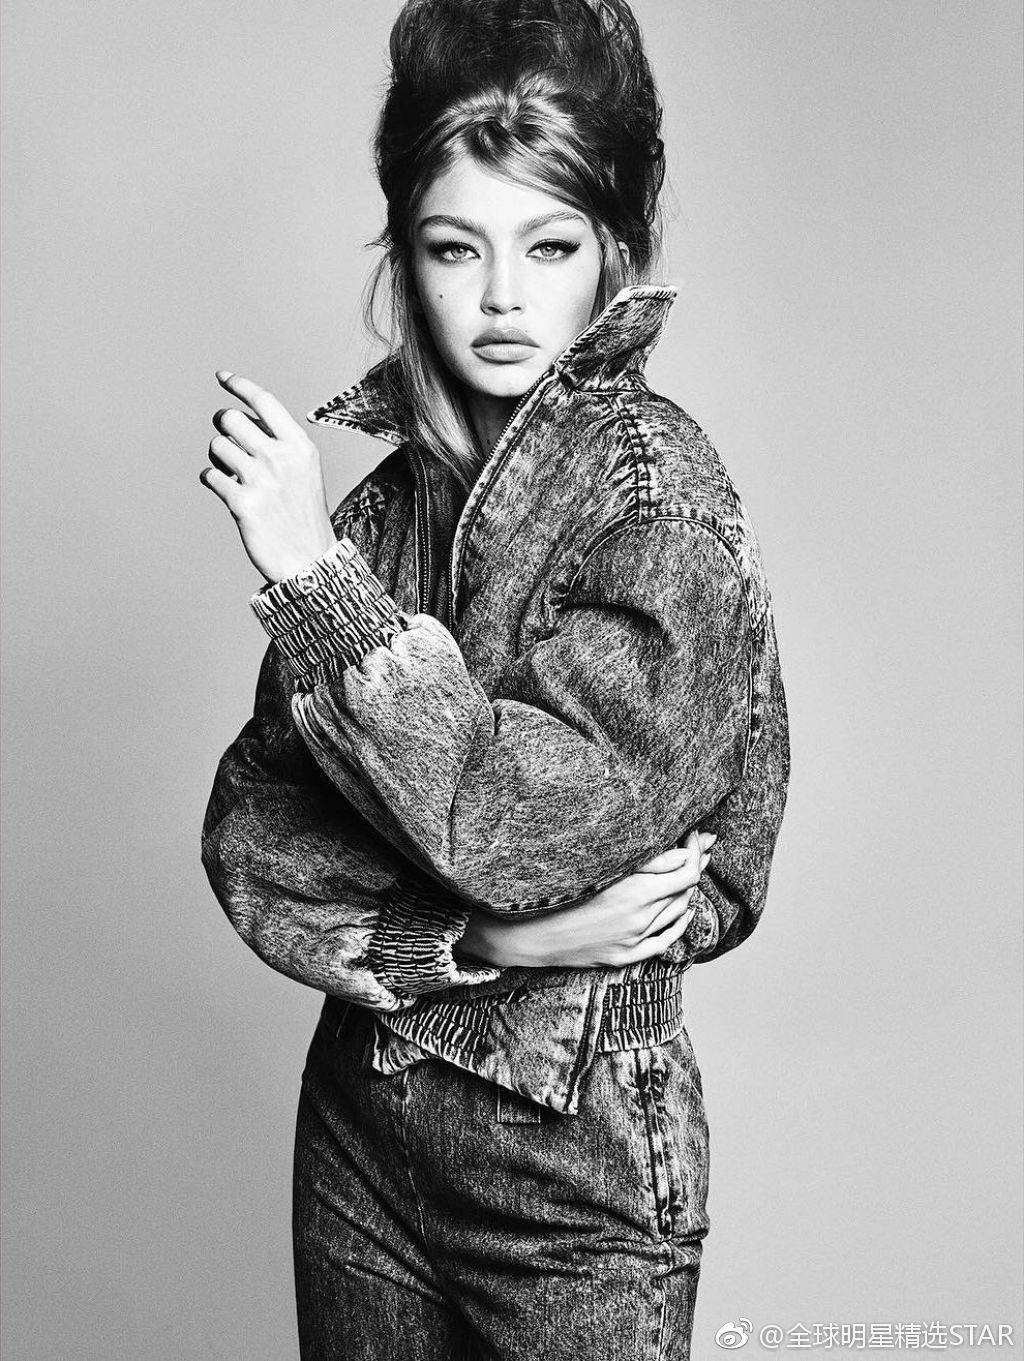 欧美女模特Gigi Hadid吉吉·哈迪德纽约街拍图片 | 犀牛图片网